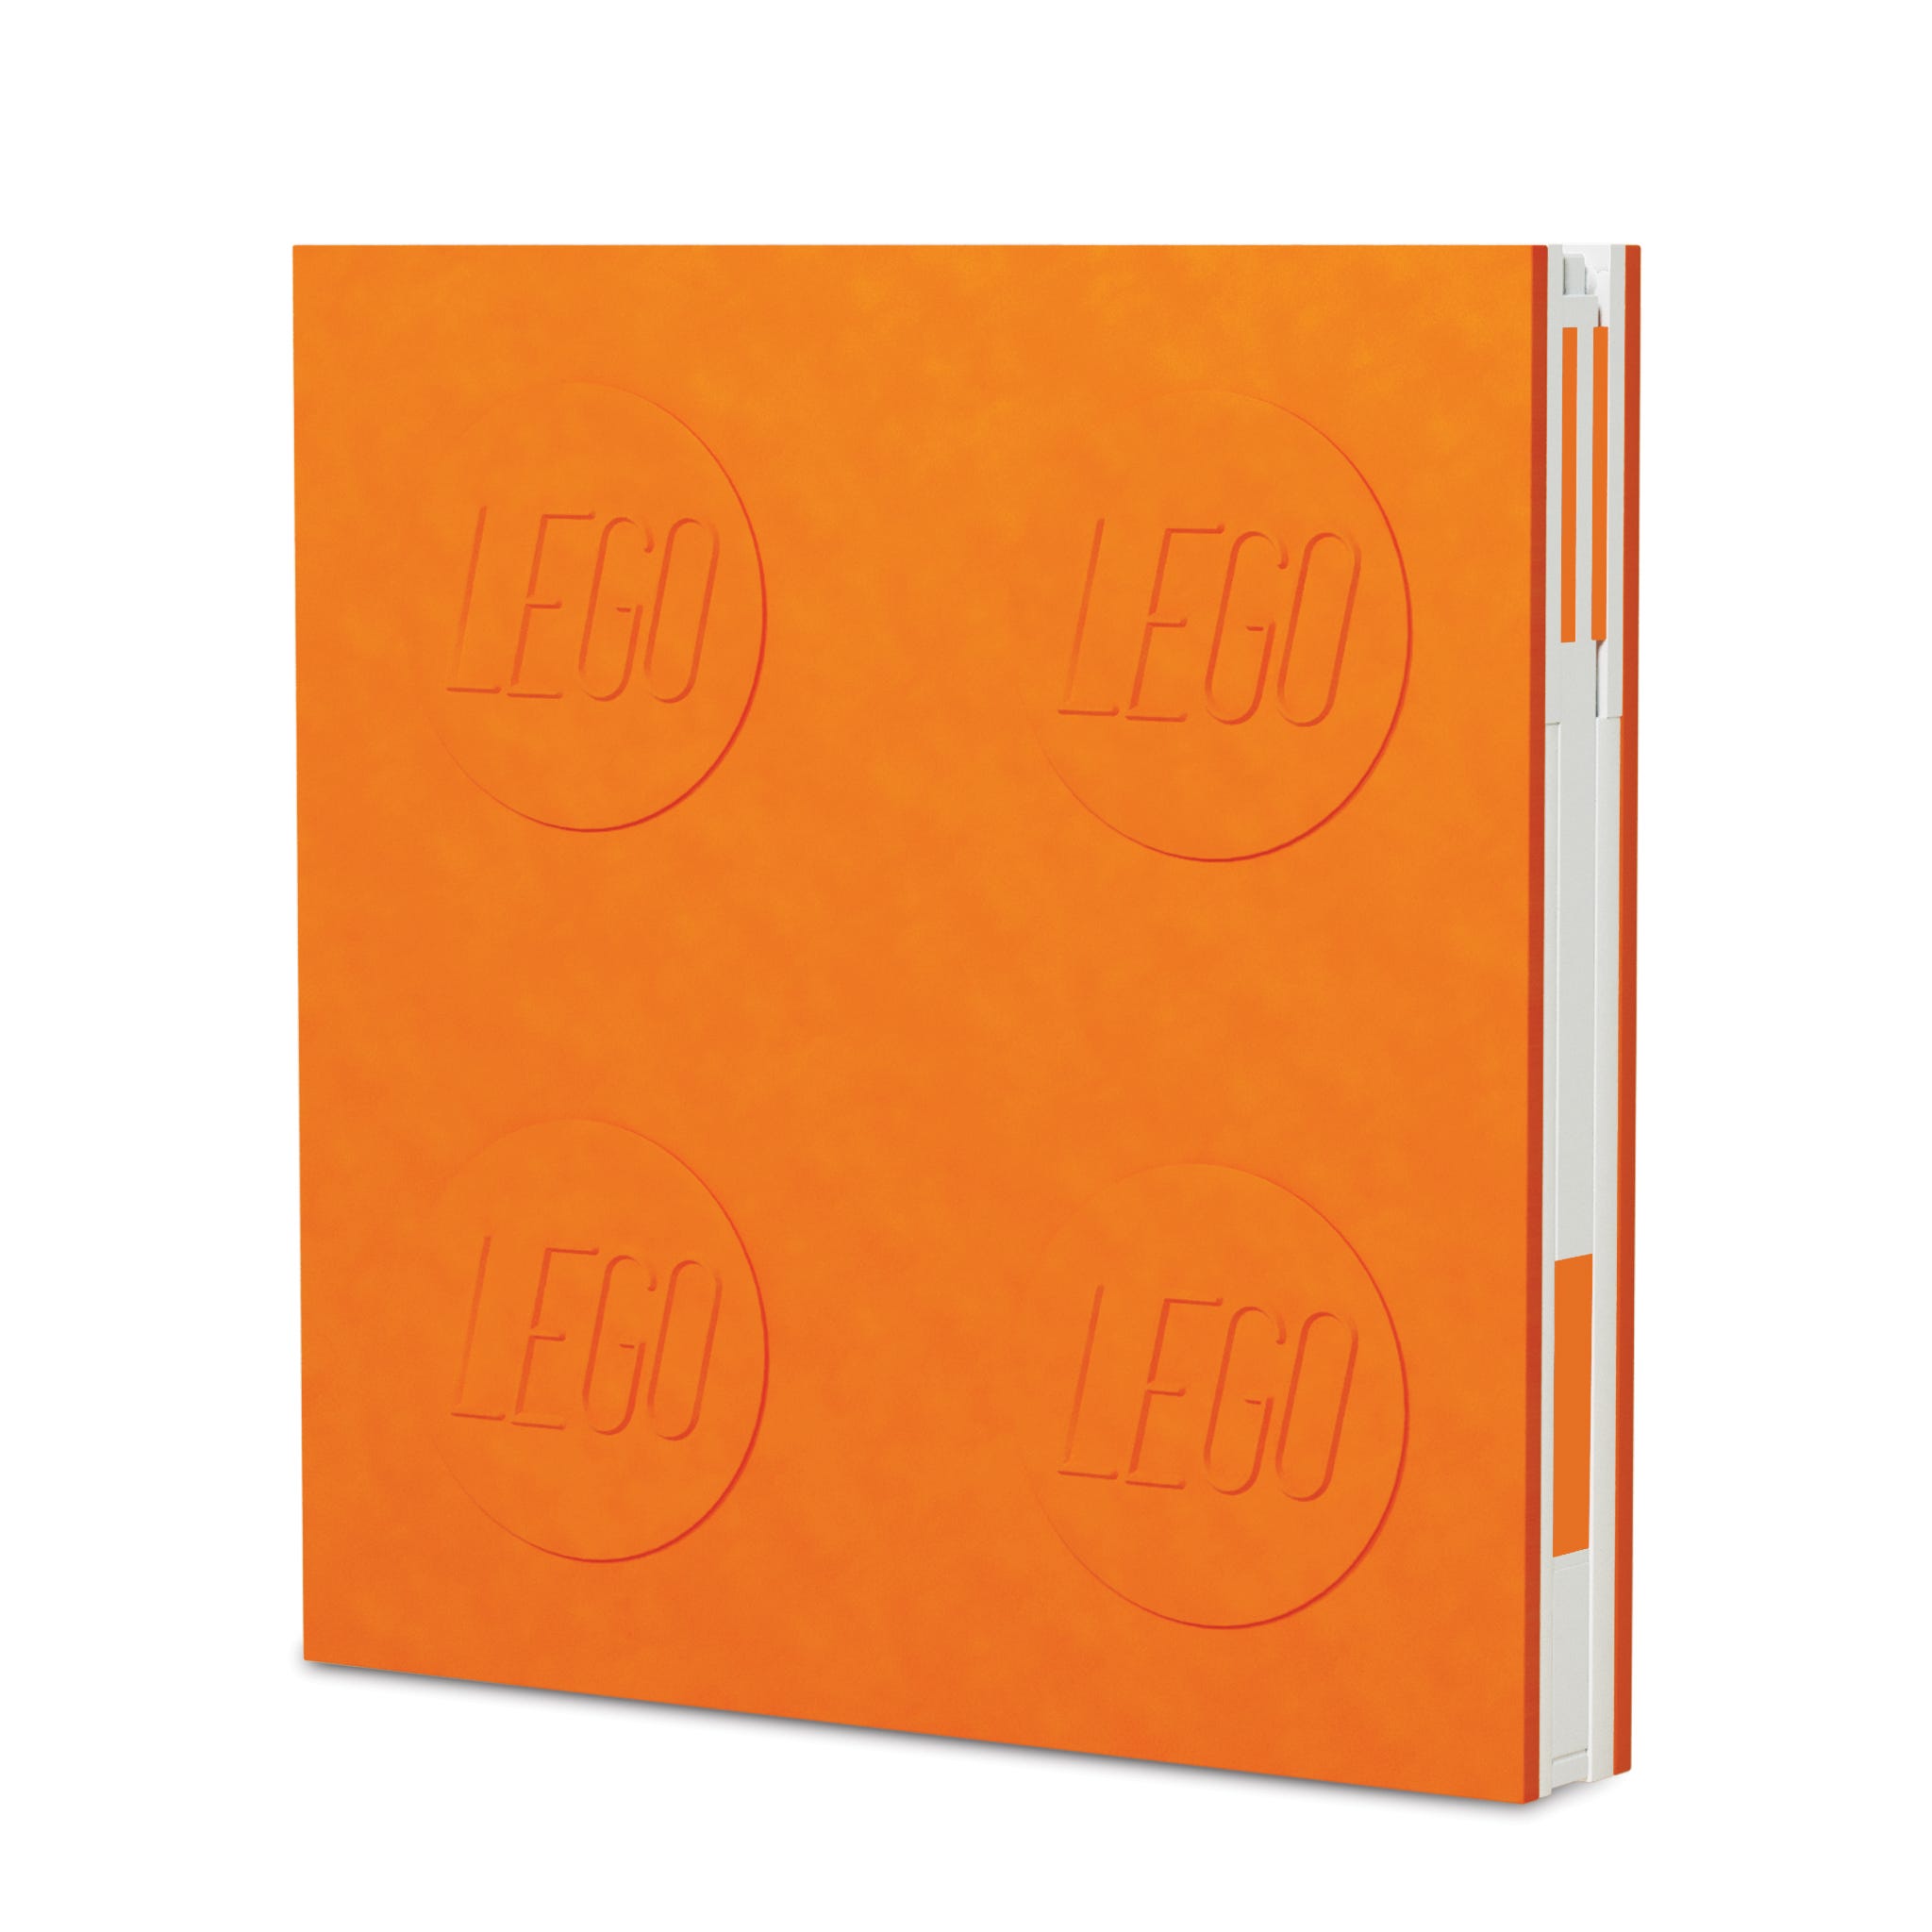 LEGO Otros - Cuaderno con Bolígrafo de Gel (naranja)